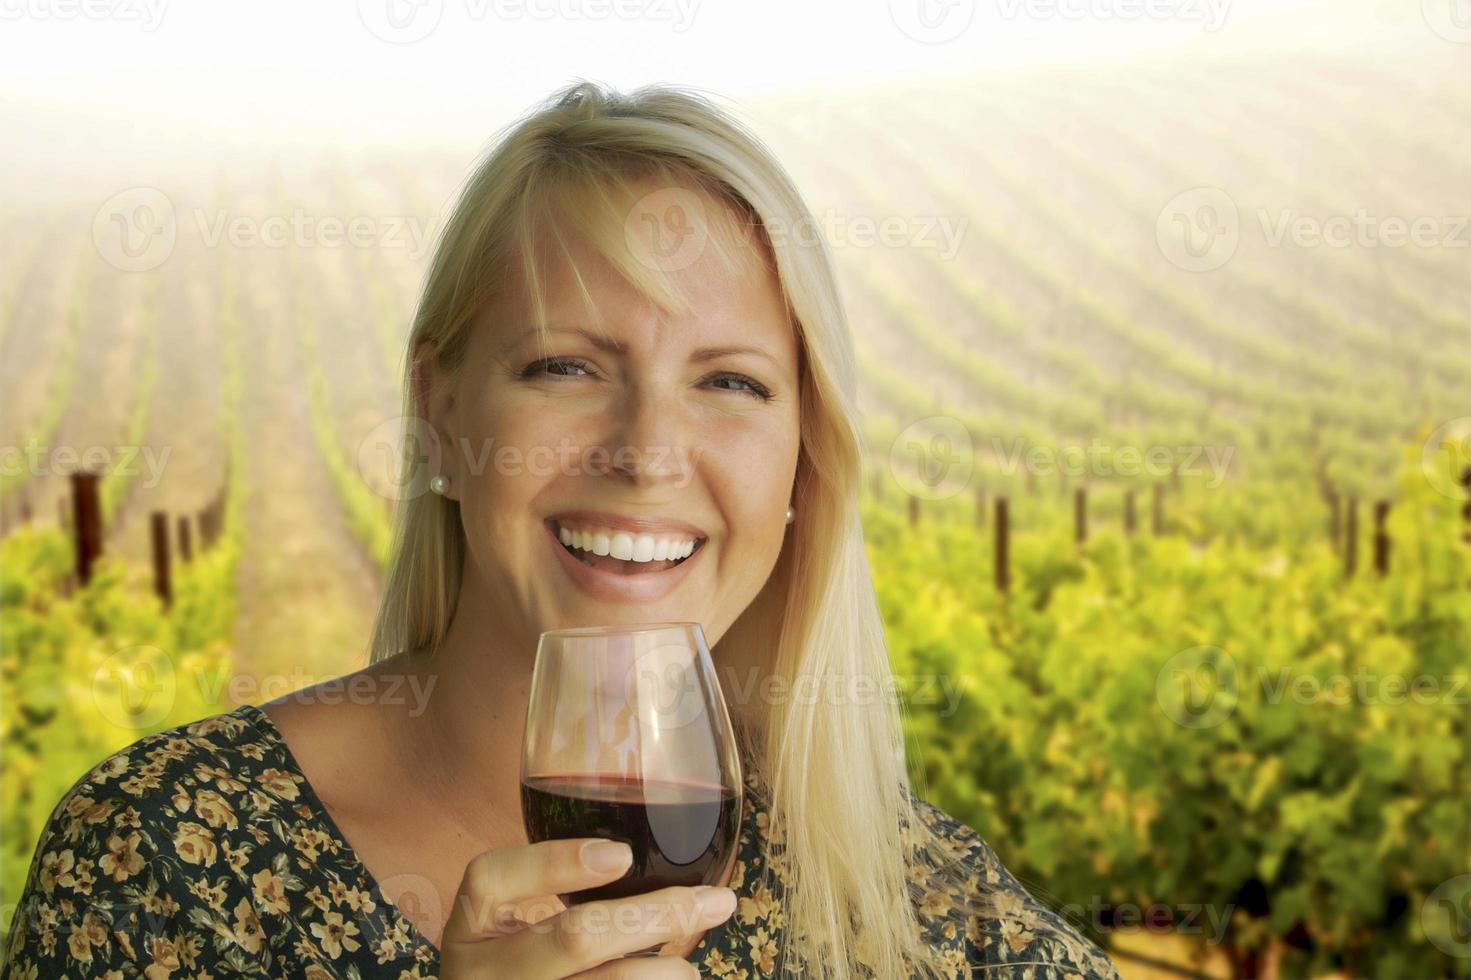 mujer atractiva disfrutando de una copa de vino en el viñedo foto